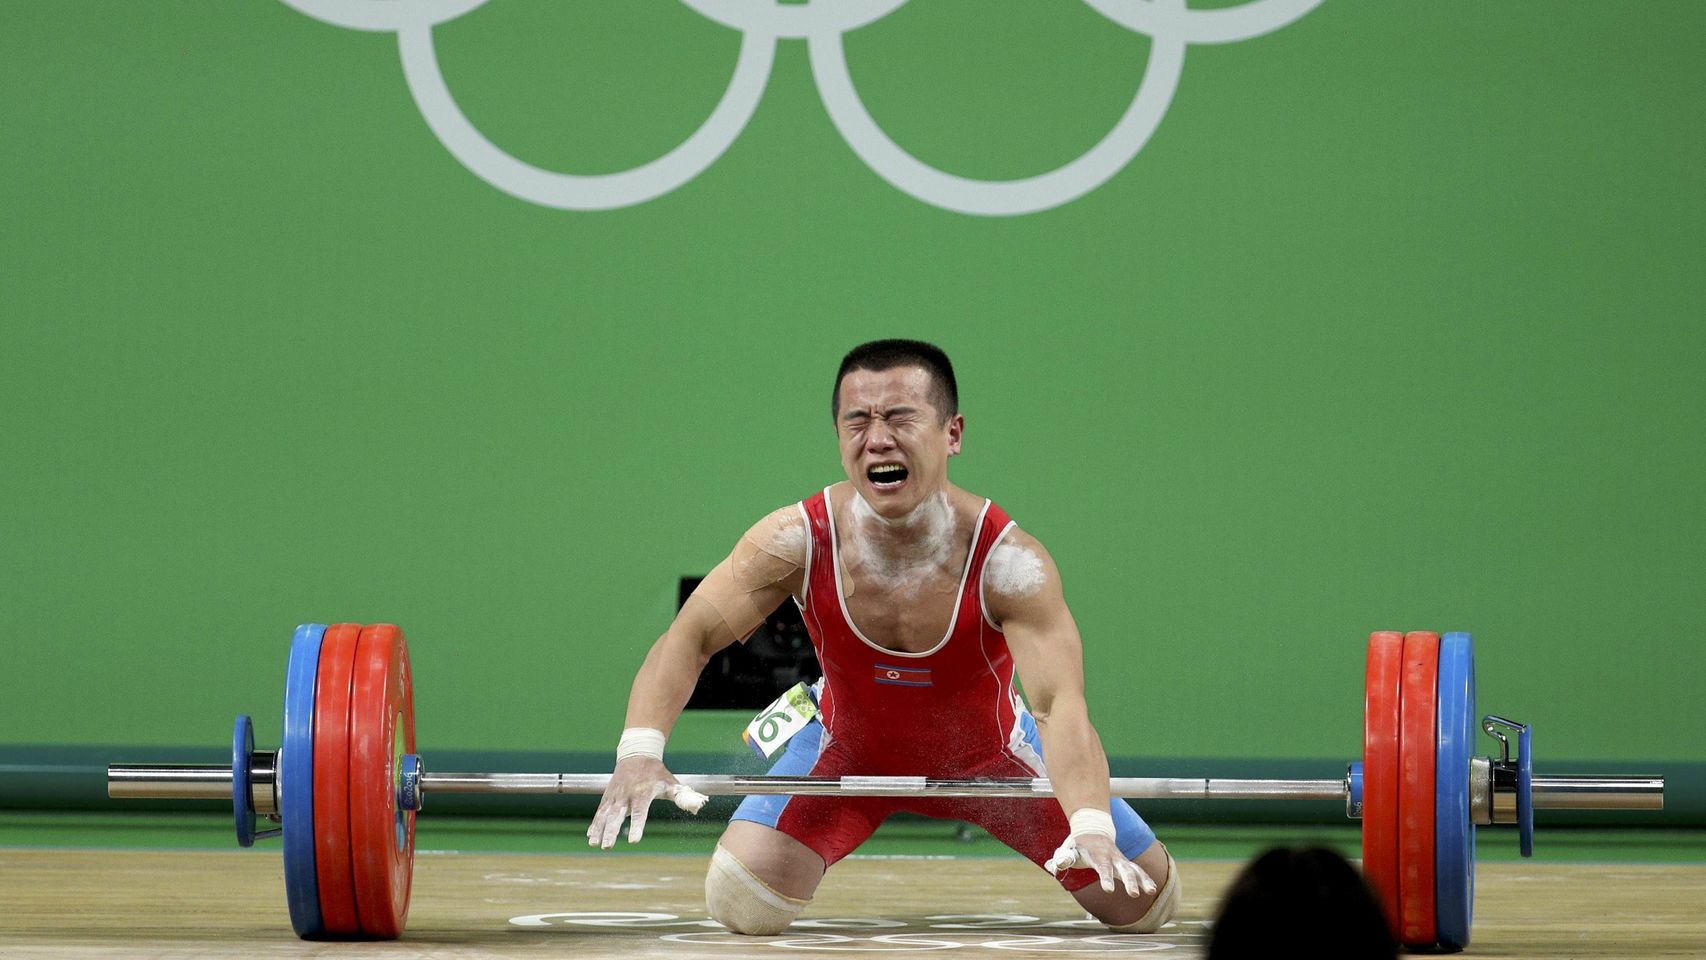  Atleta norcoreano rompe en llanto al obtener plata; asegura que será ejecutado